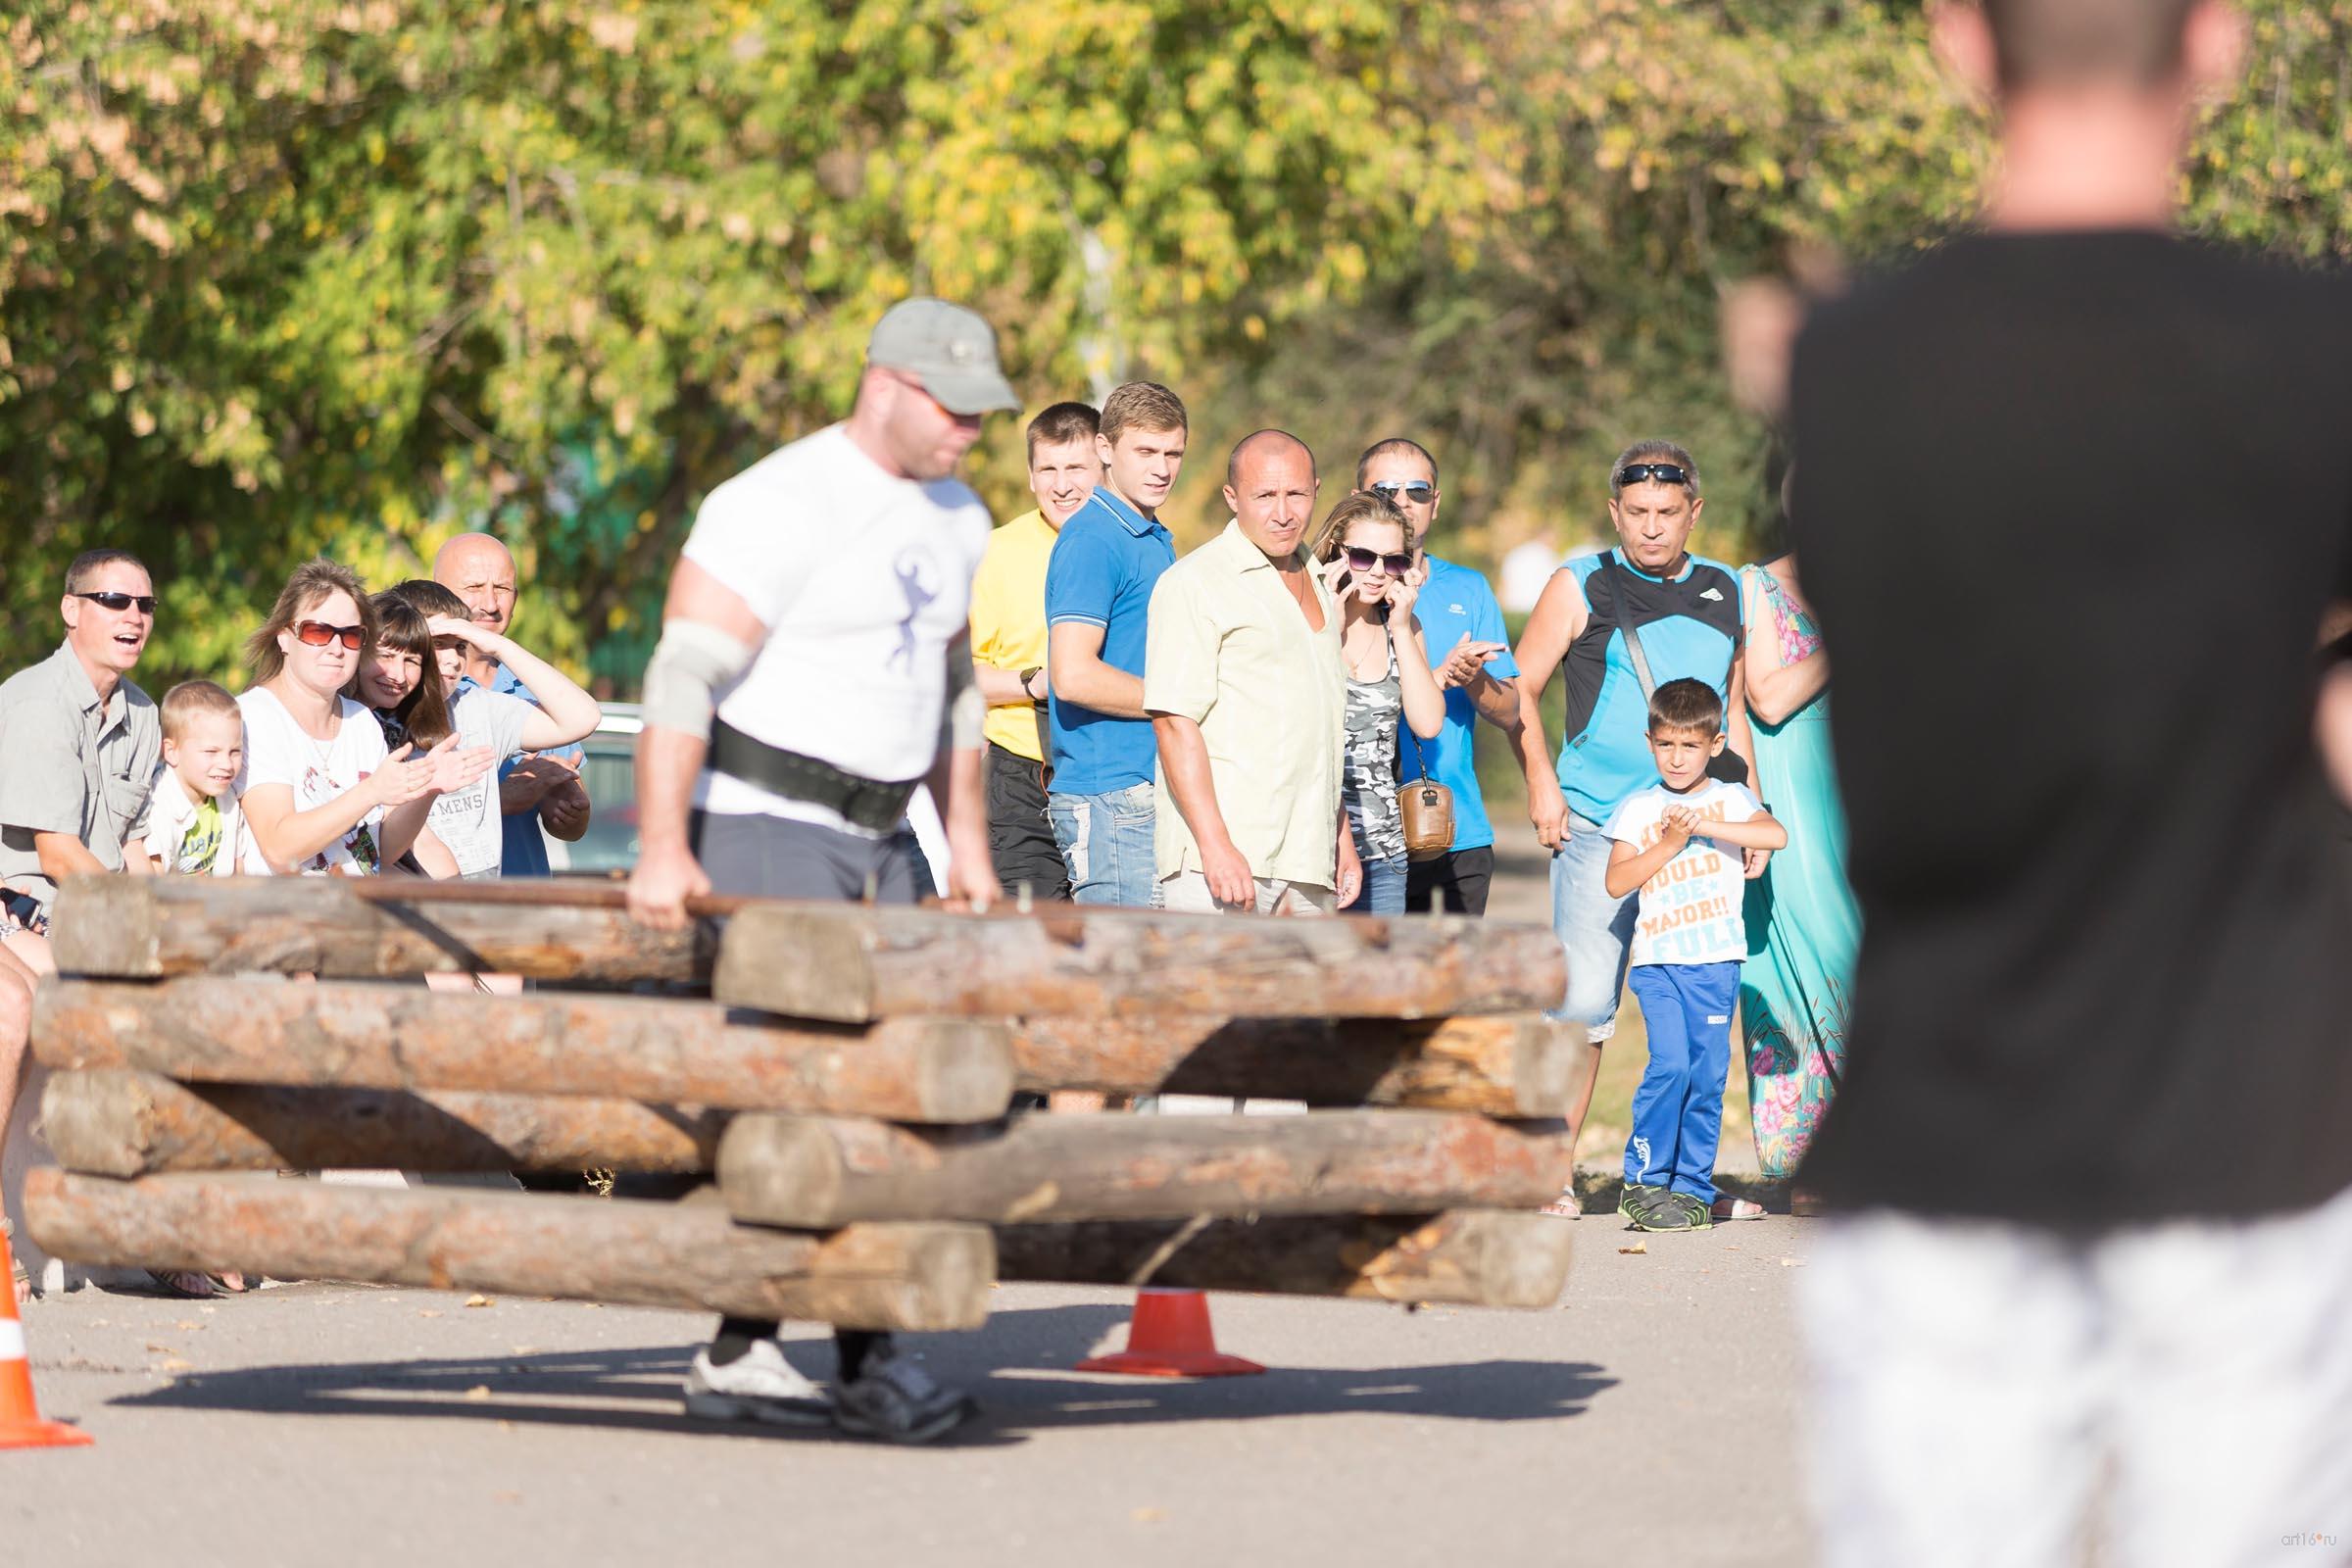  Турнир по силовому экстриму. Бег с деревянным каркасом::Балашов, сентябрь 2015